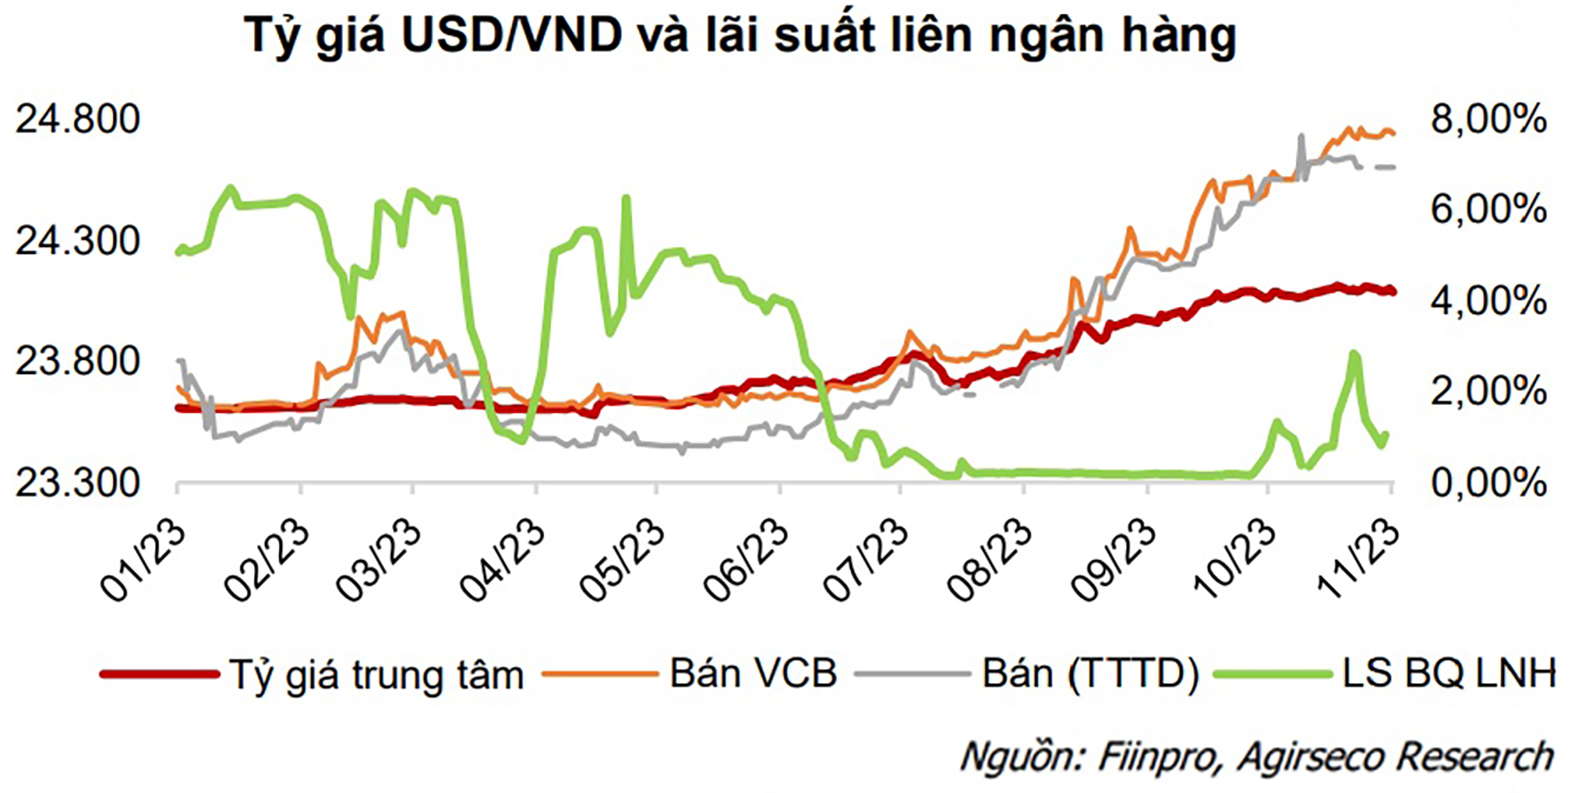 p/Tỷ giá USD/VND chịu áp lực tăng trong tháng 10